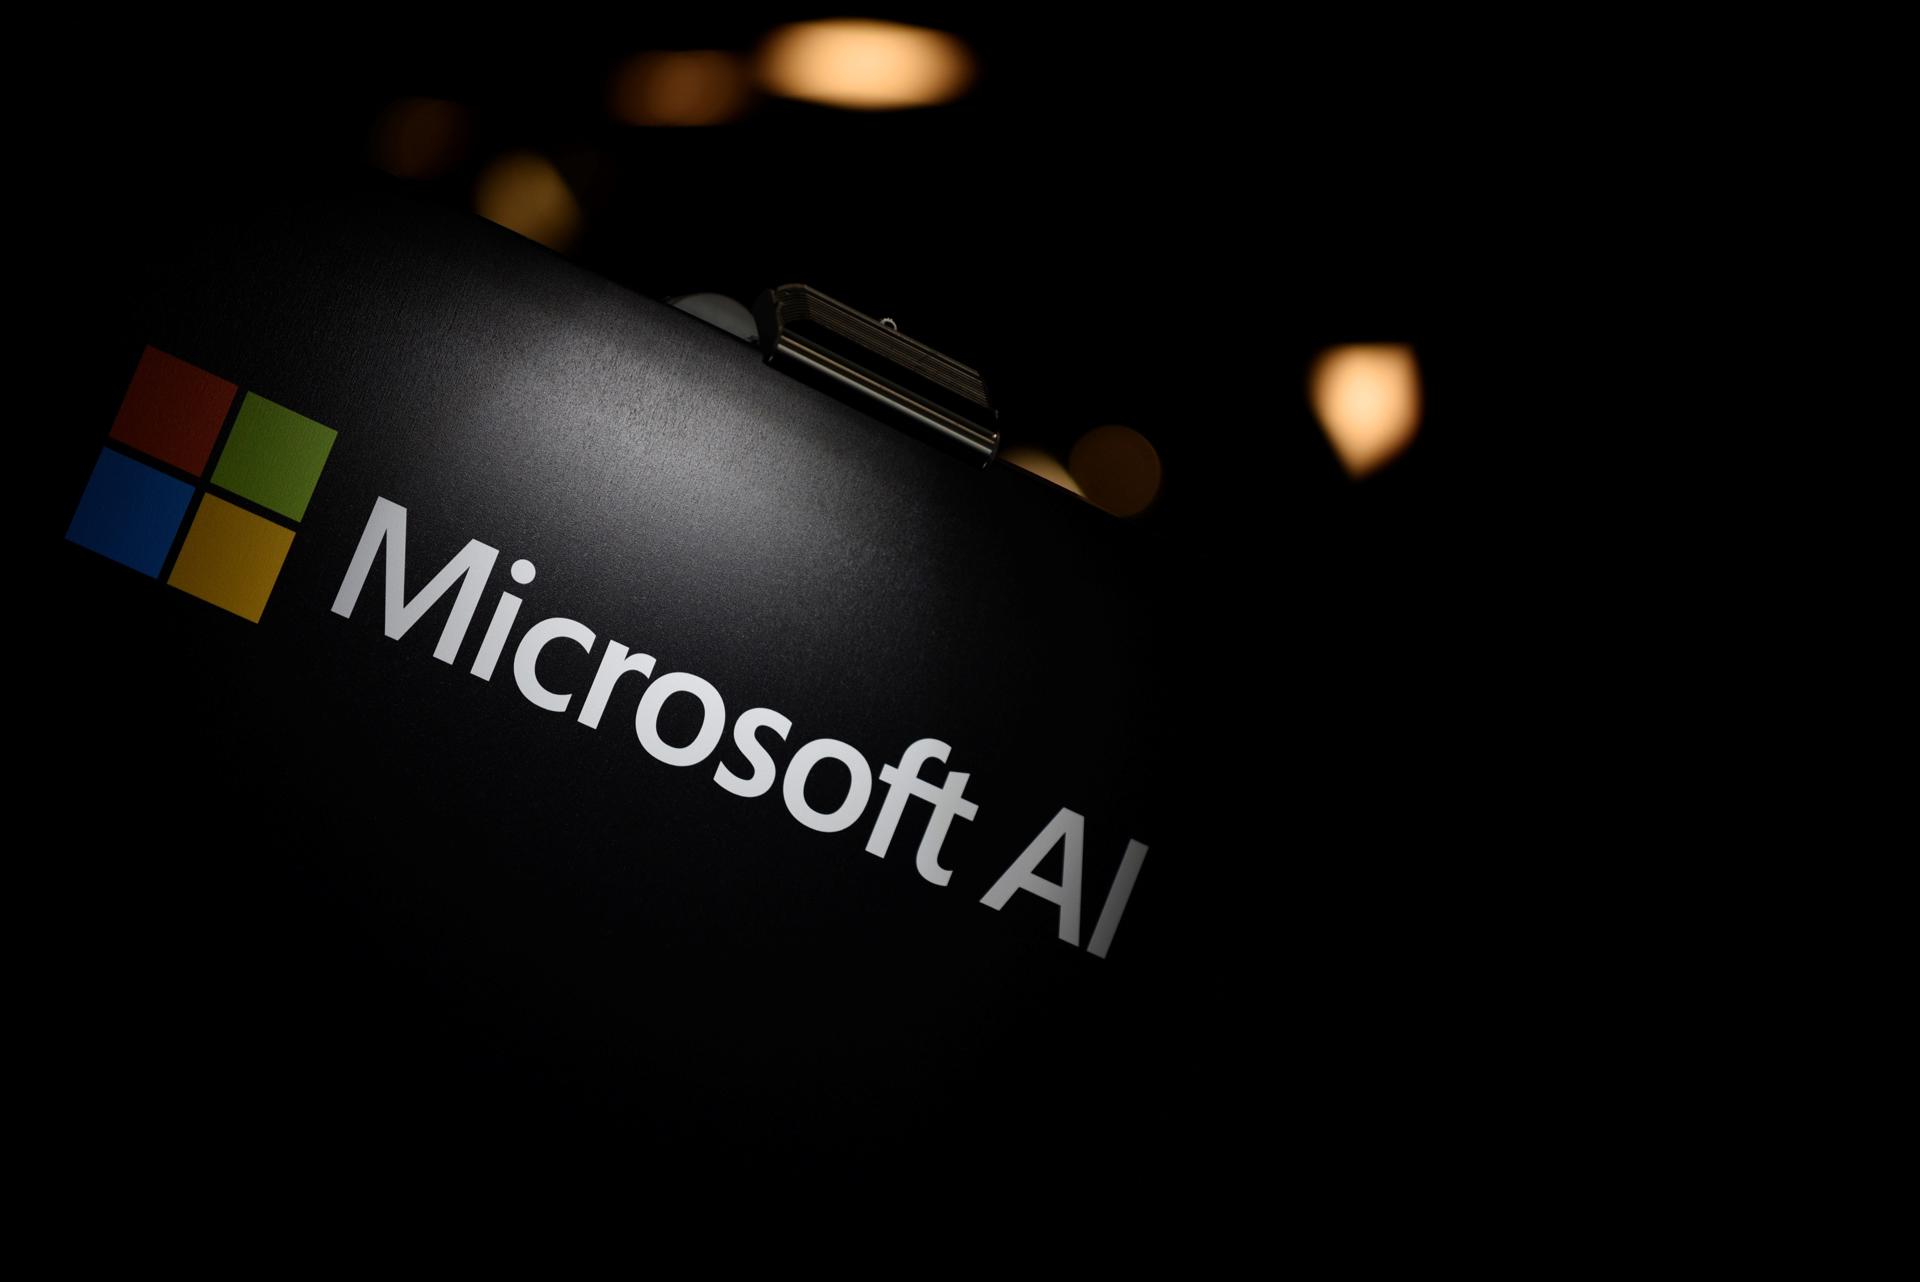 Vista del logo de Microsoft, en una fotografía de archivo. EFE/Julien de Rosa